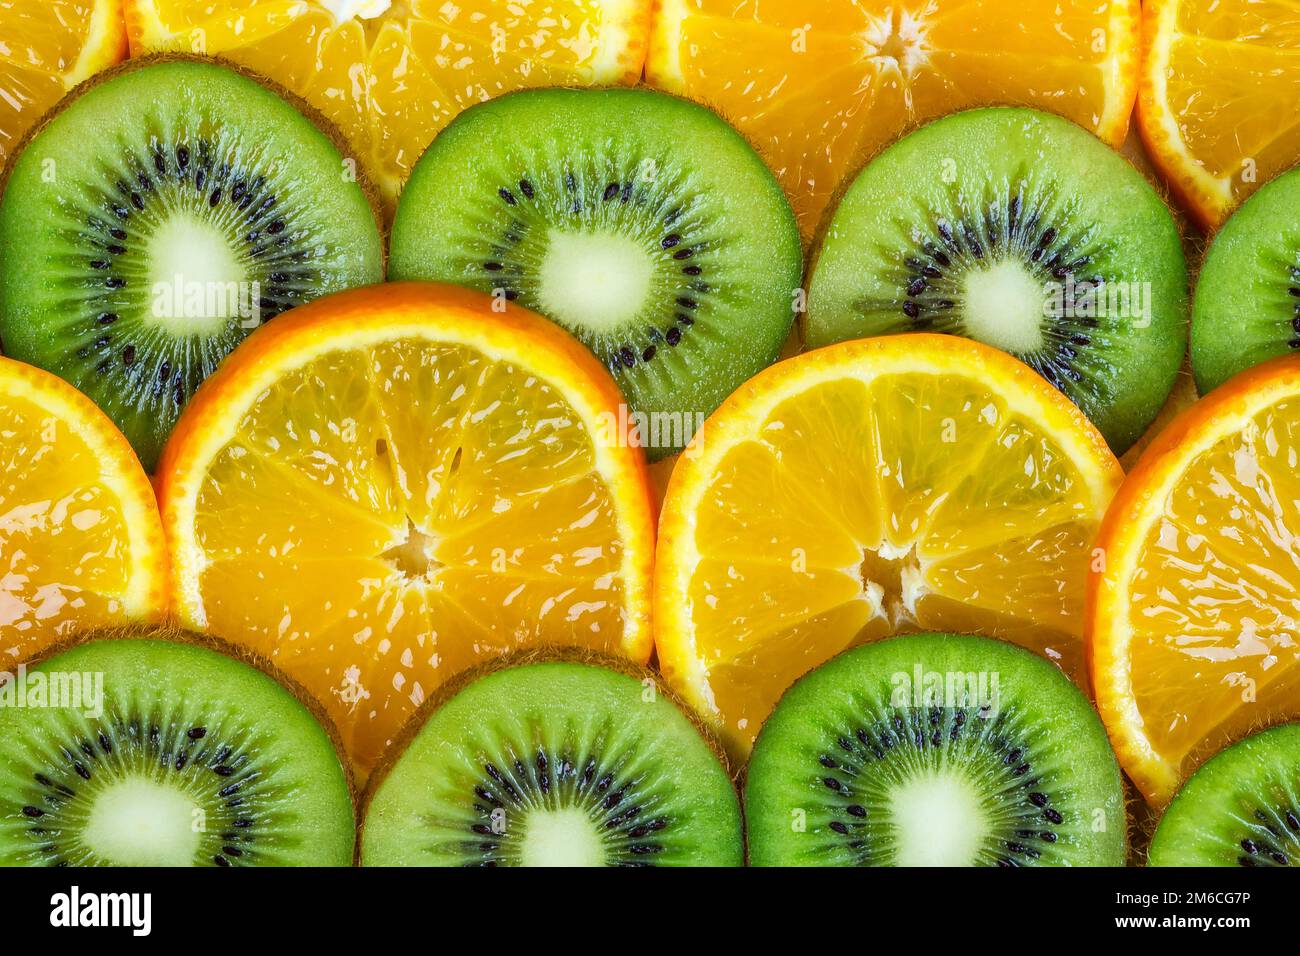 Les tranches de mandarine et le kiwi empilés sur l'ensemble de chaque image Banque D'Images